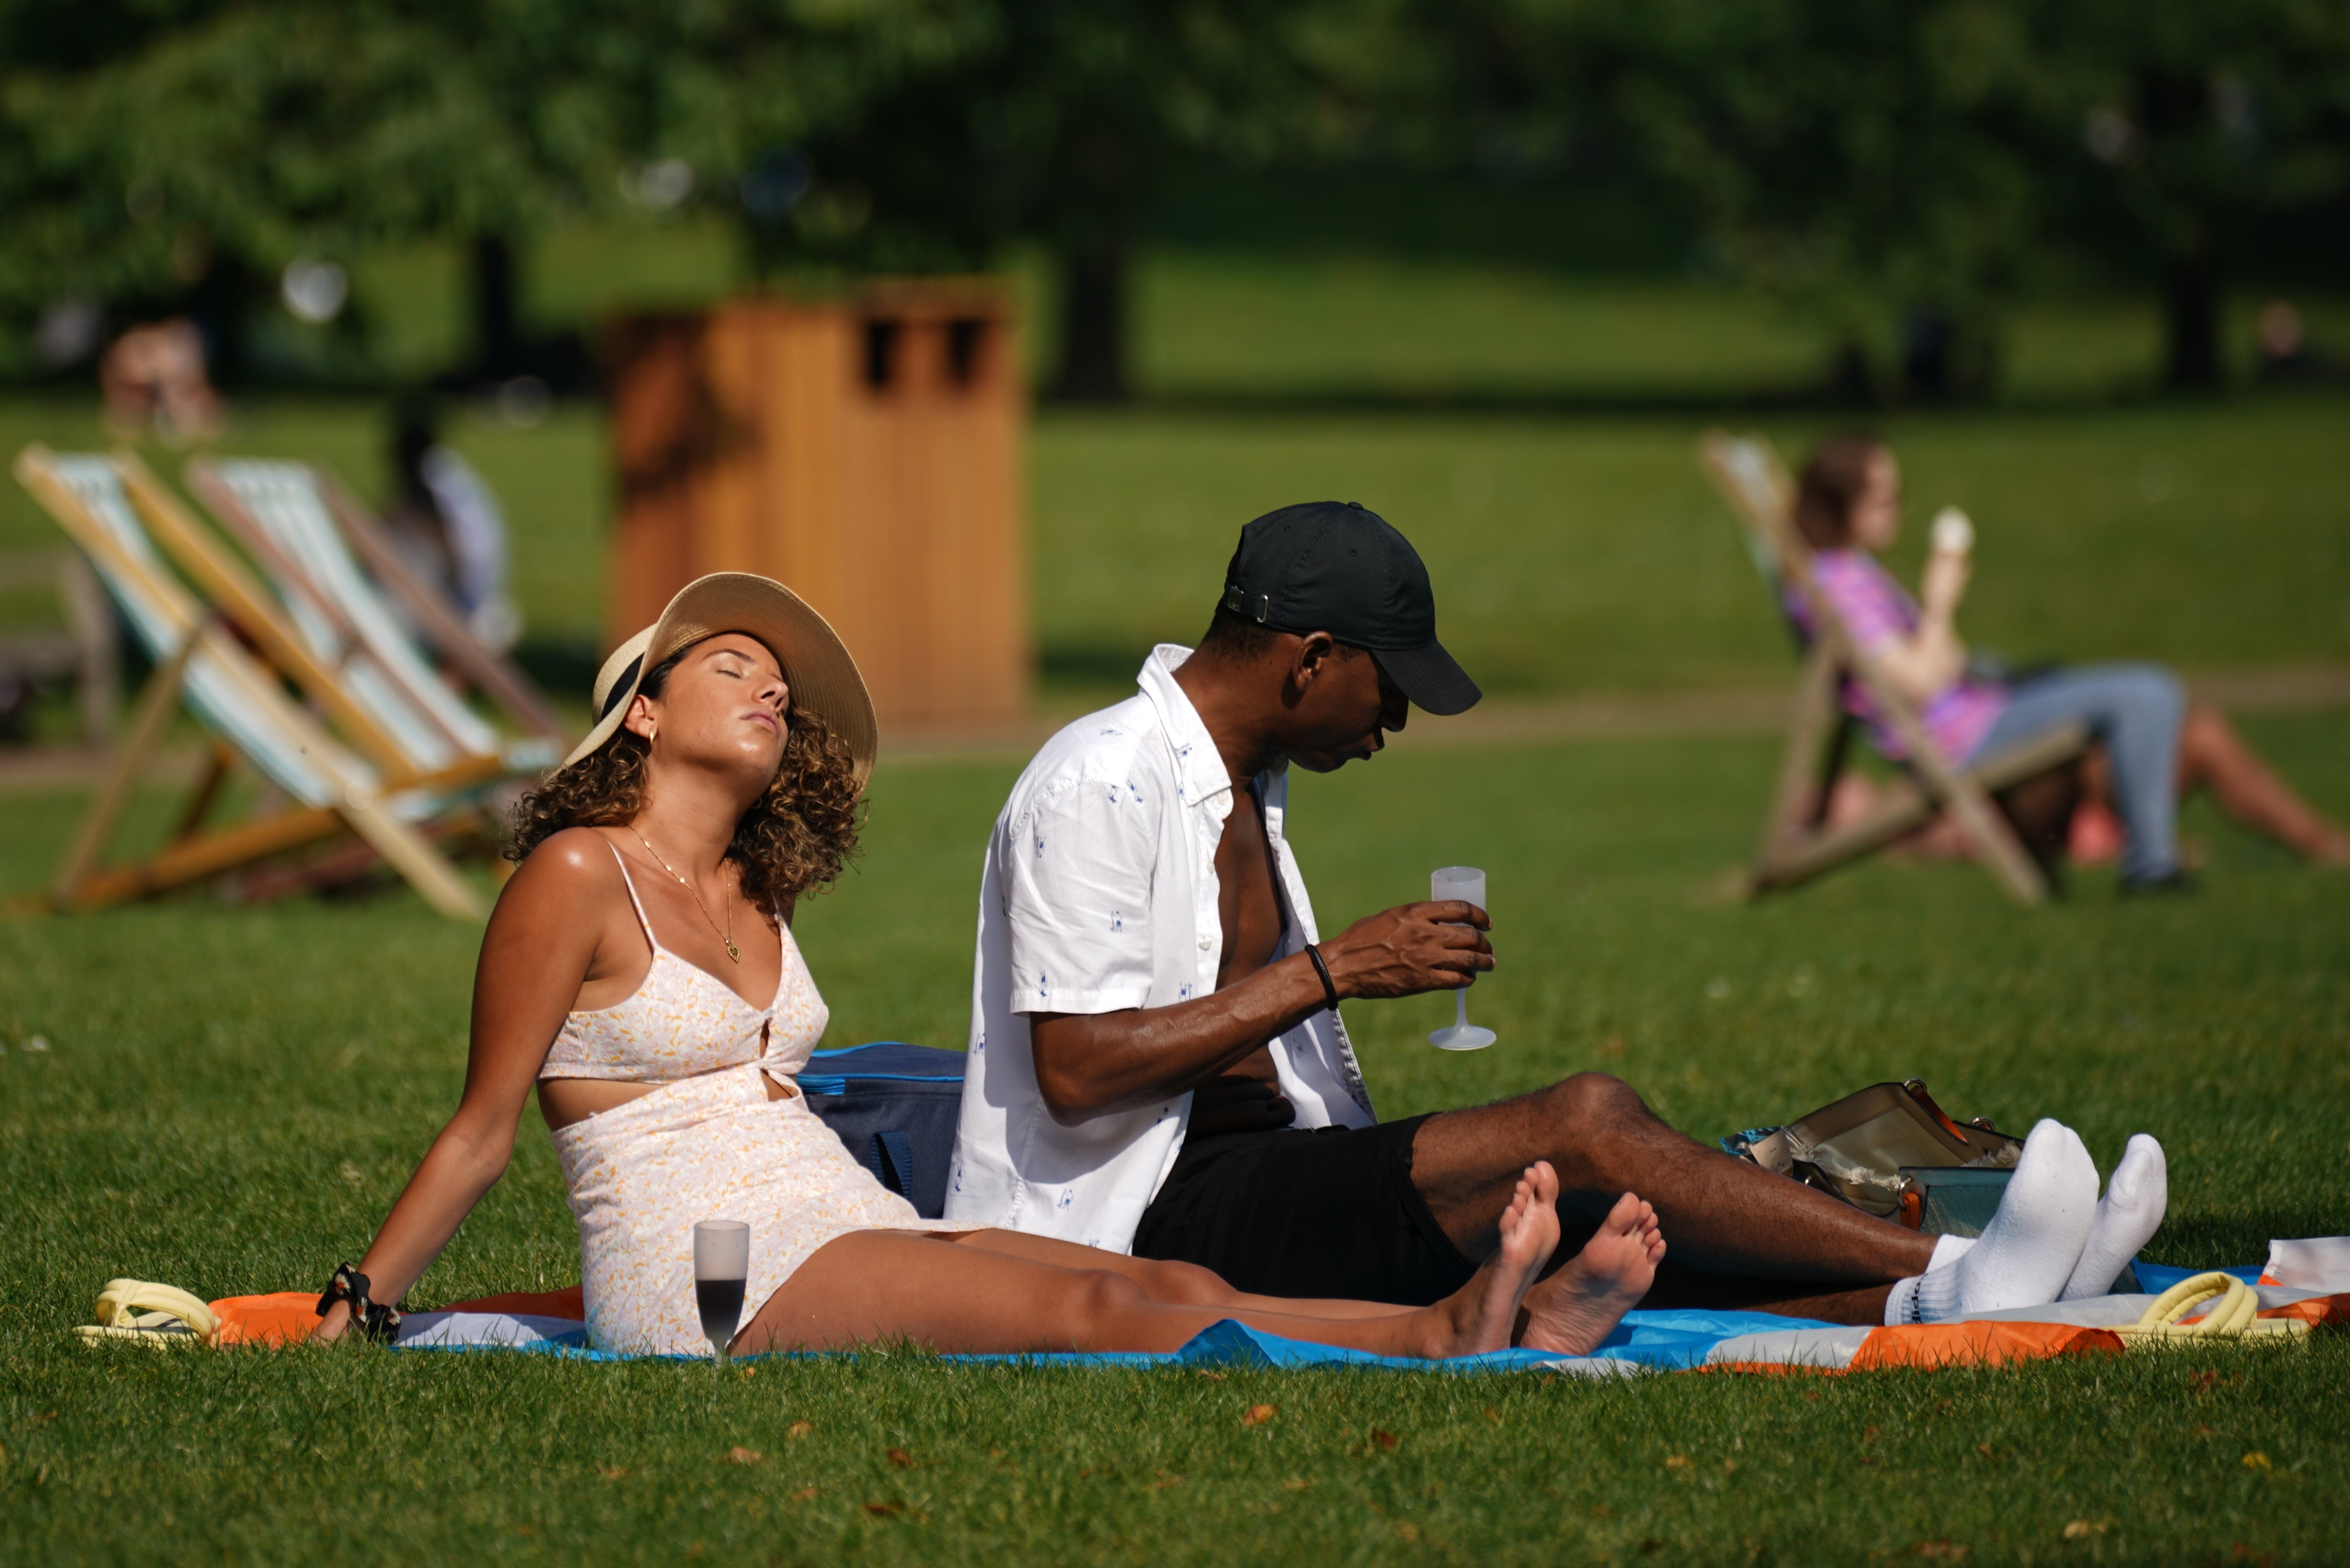 Les gens de la vague de chaleur au Royaume-Uni profitent du soleil à St James's Park, Londres